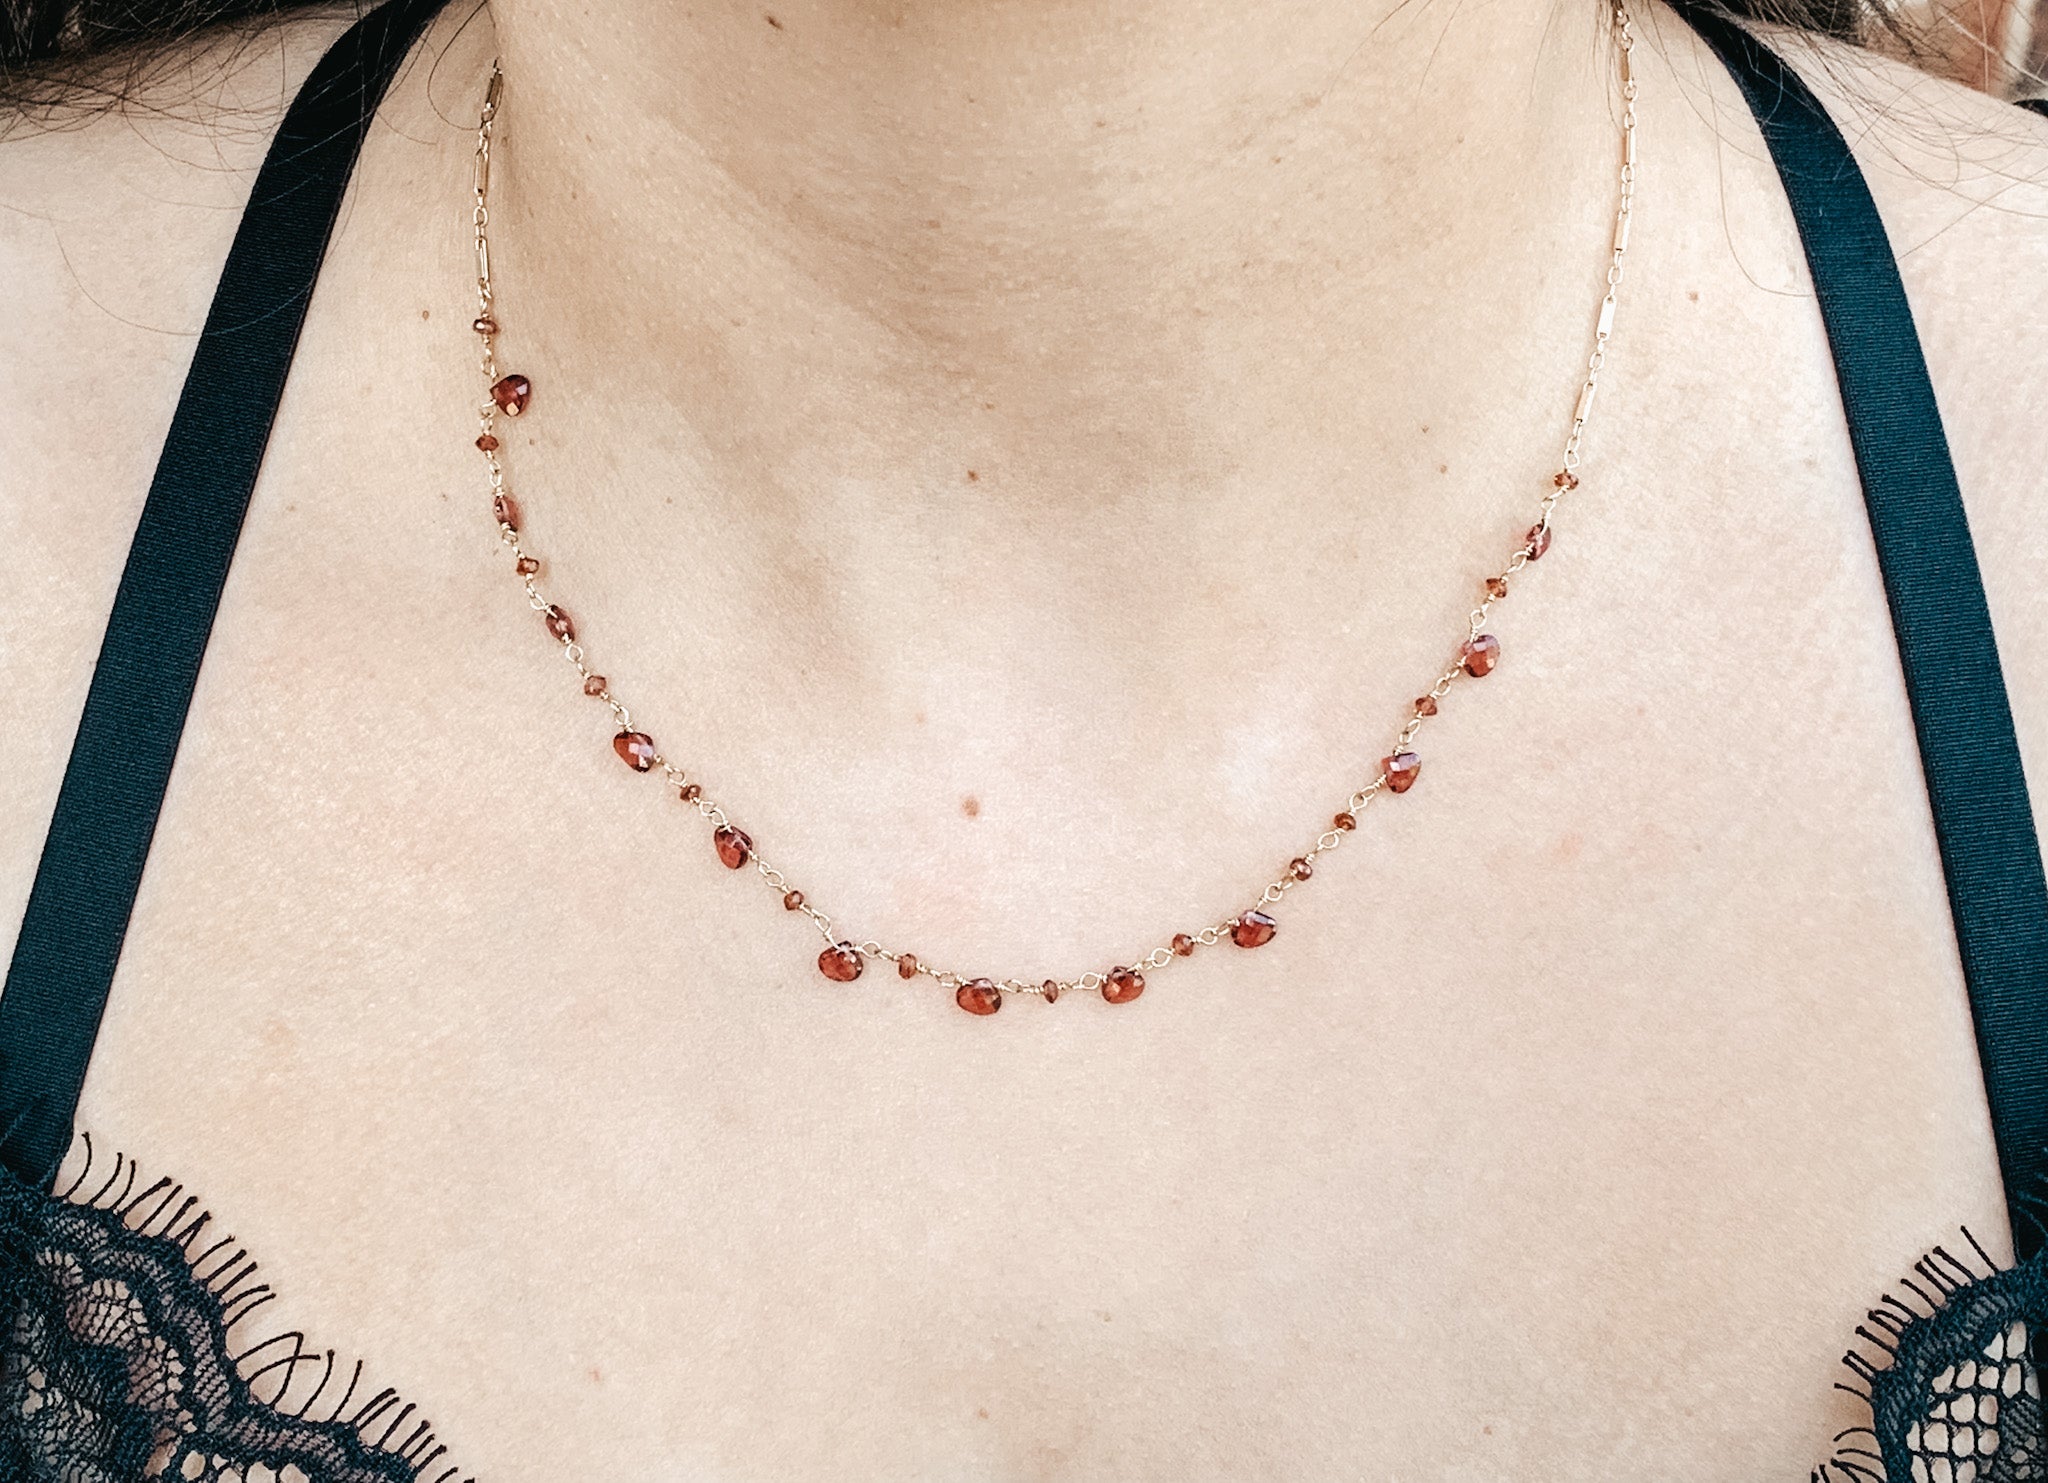 Fancy-cut Garnet Necklace